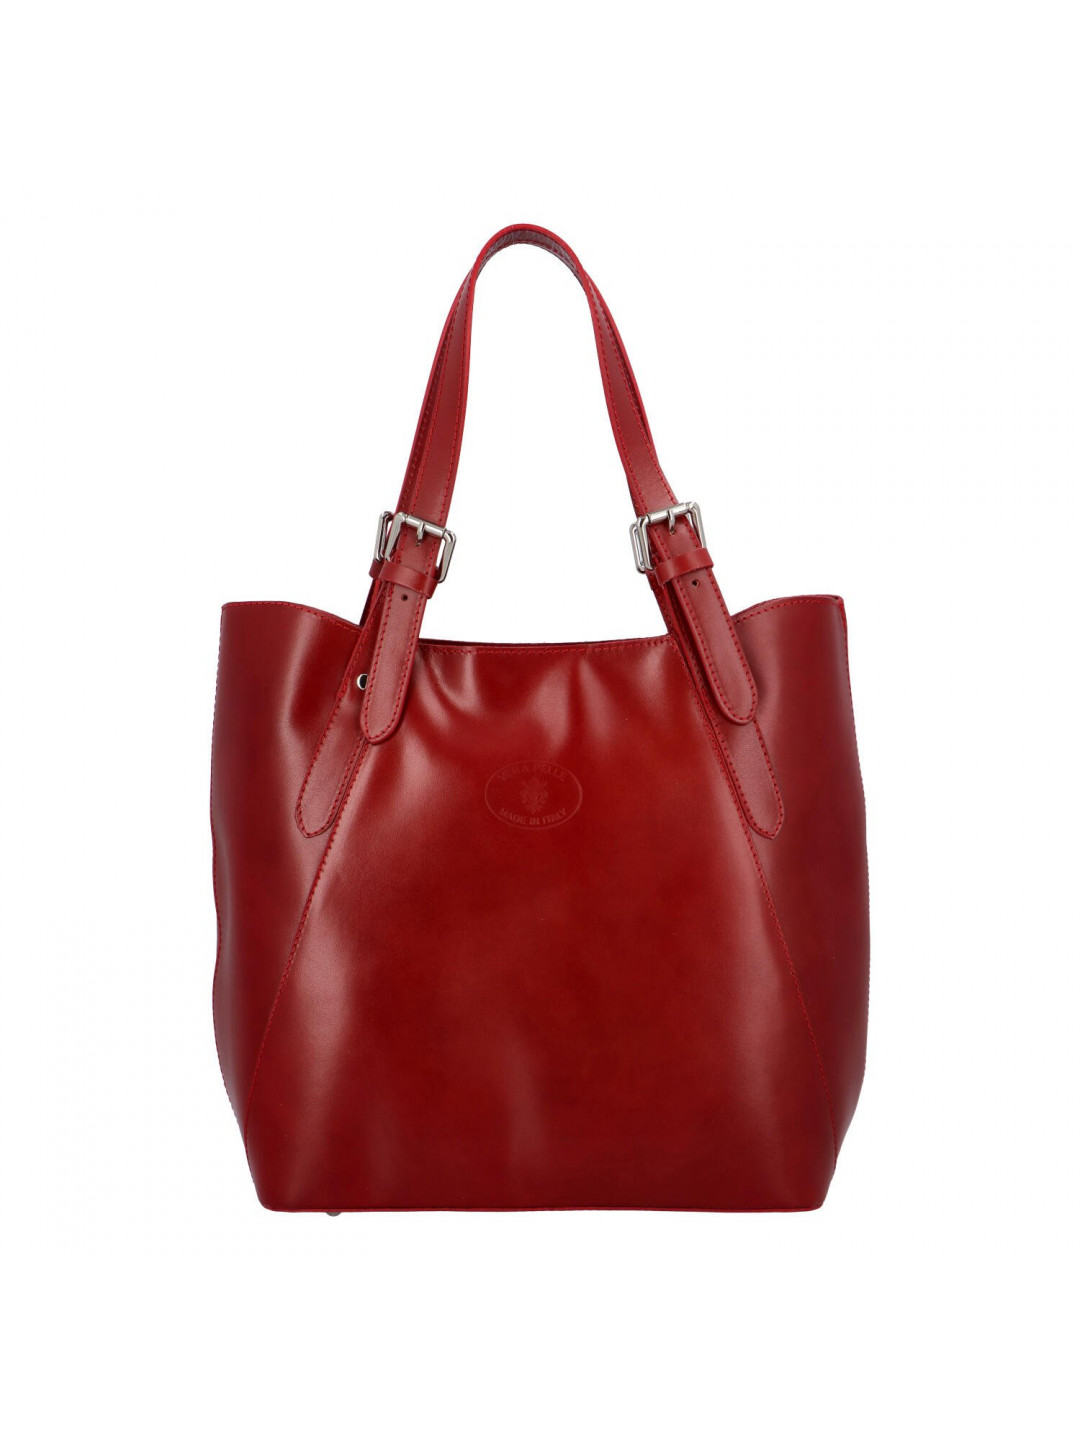 Dámská kožená kabelka přes rameno tmavě červená – Delami Ketris červená